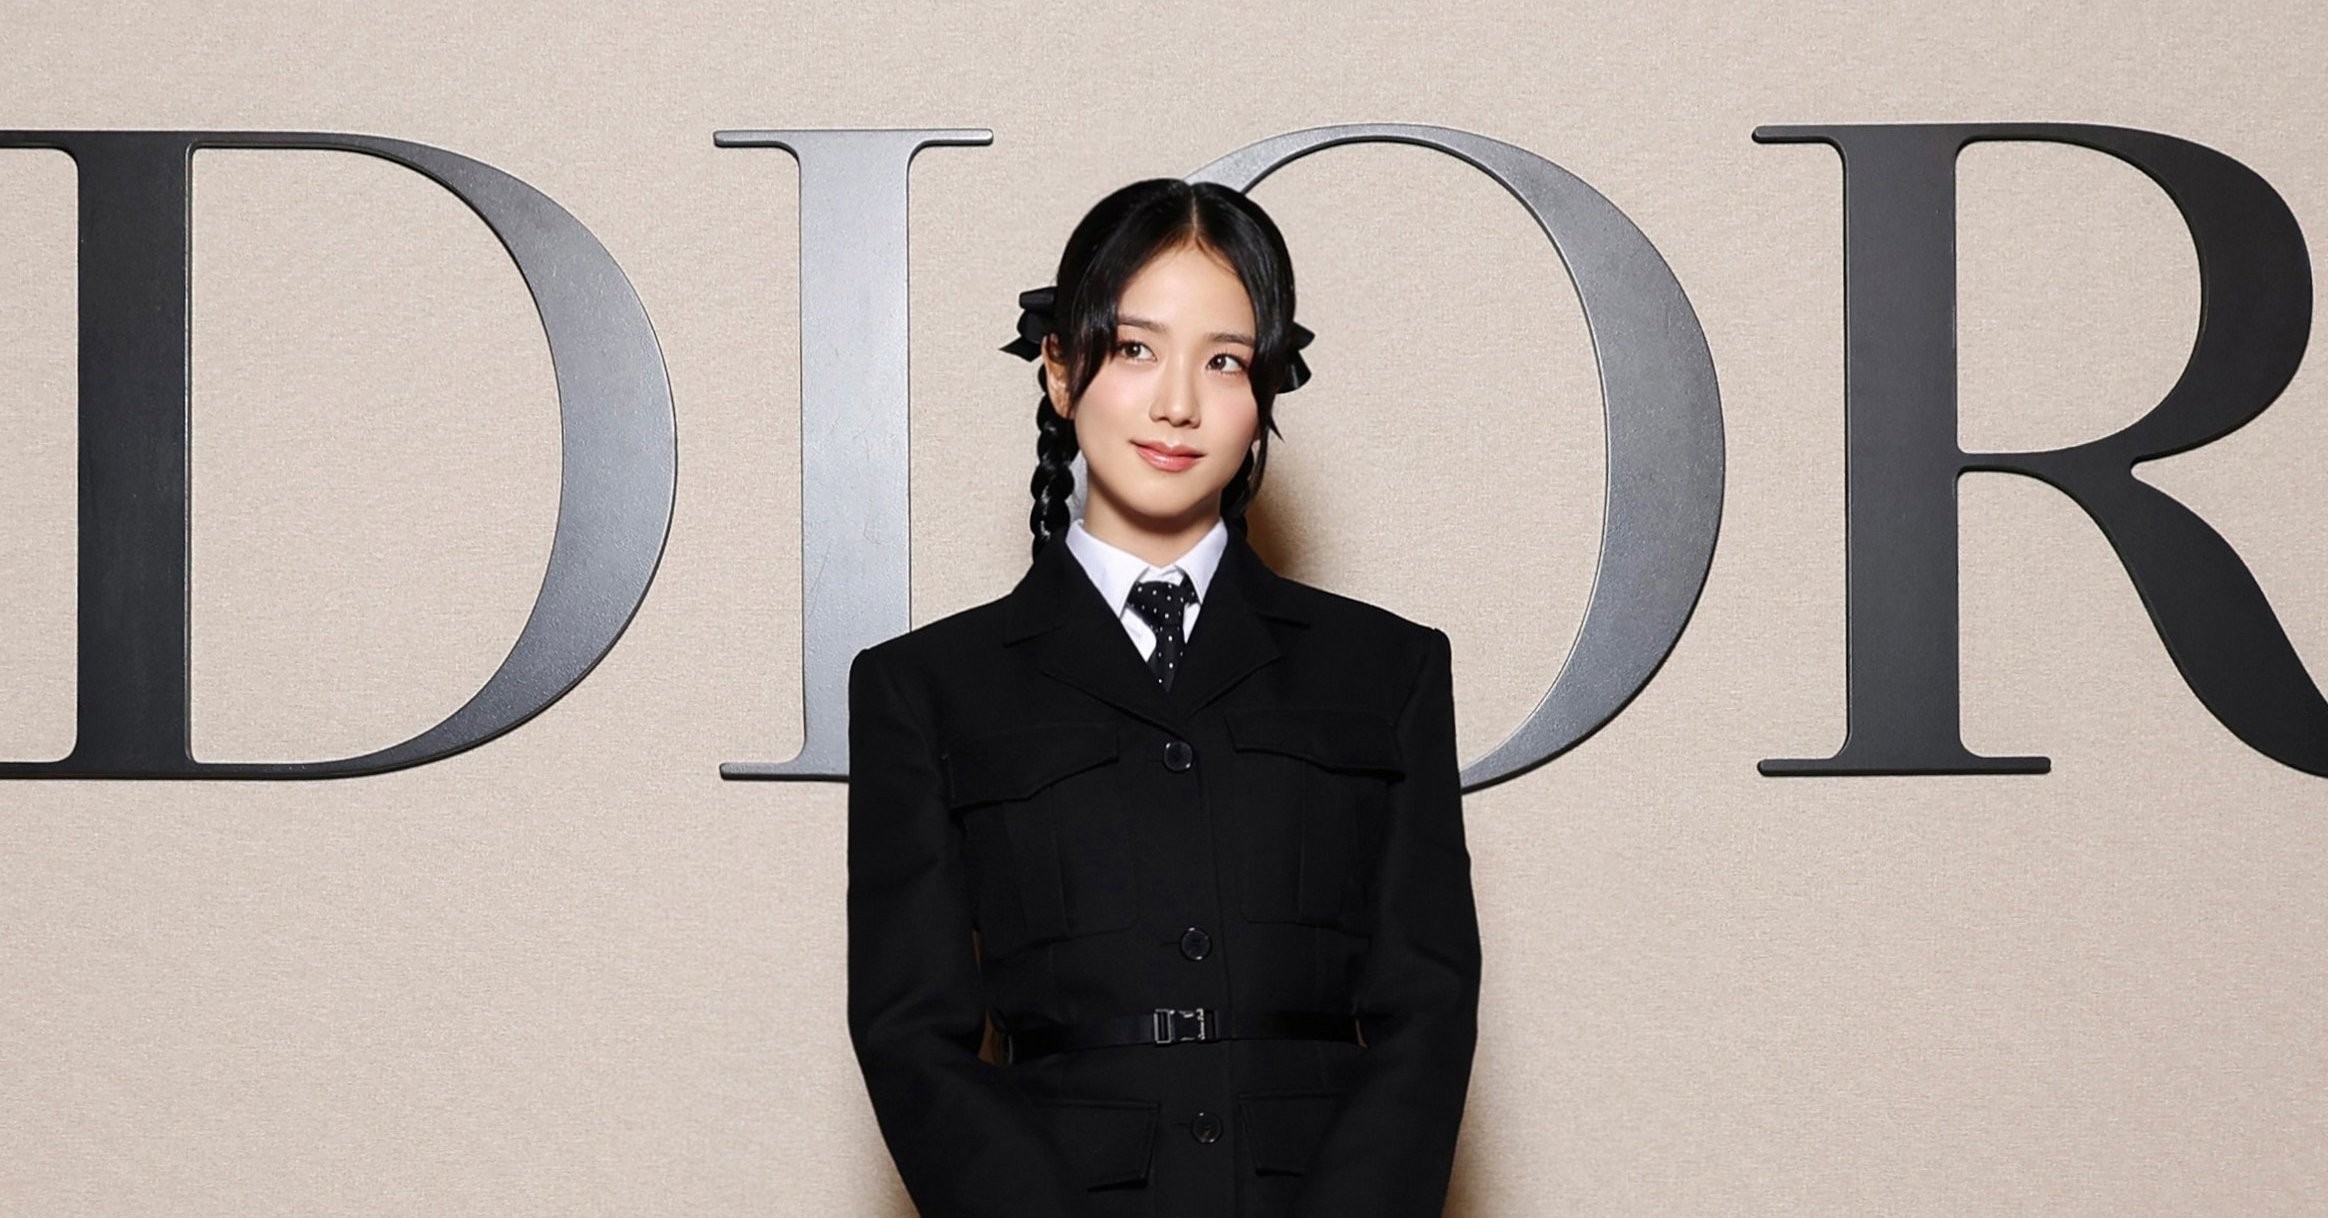 Jisoo được mệnh danh là “công chúa Dior” khi nhận được những ưu ái mà không phải nghệ sĩ nào cũng có được